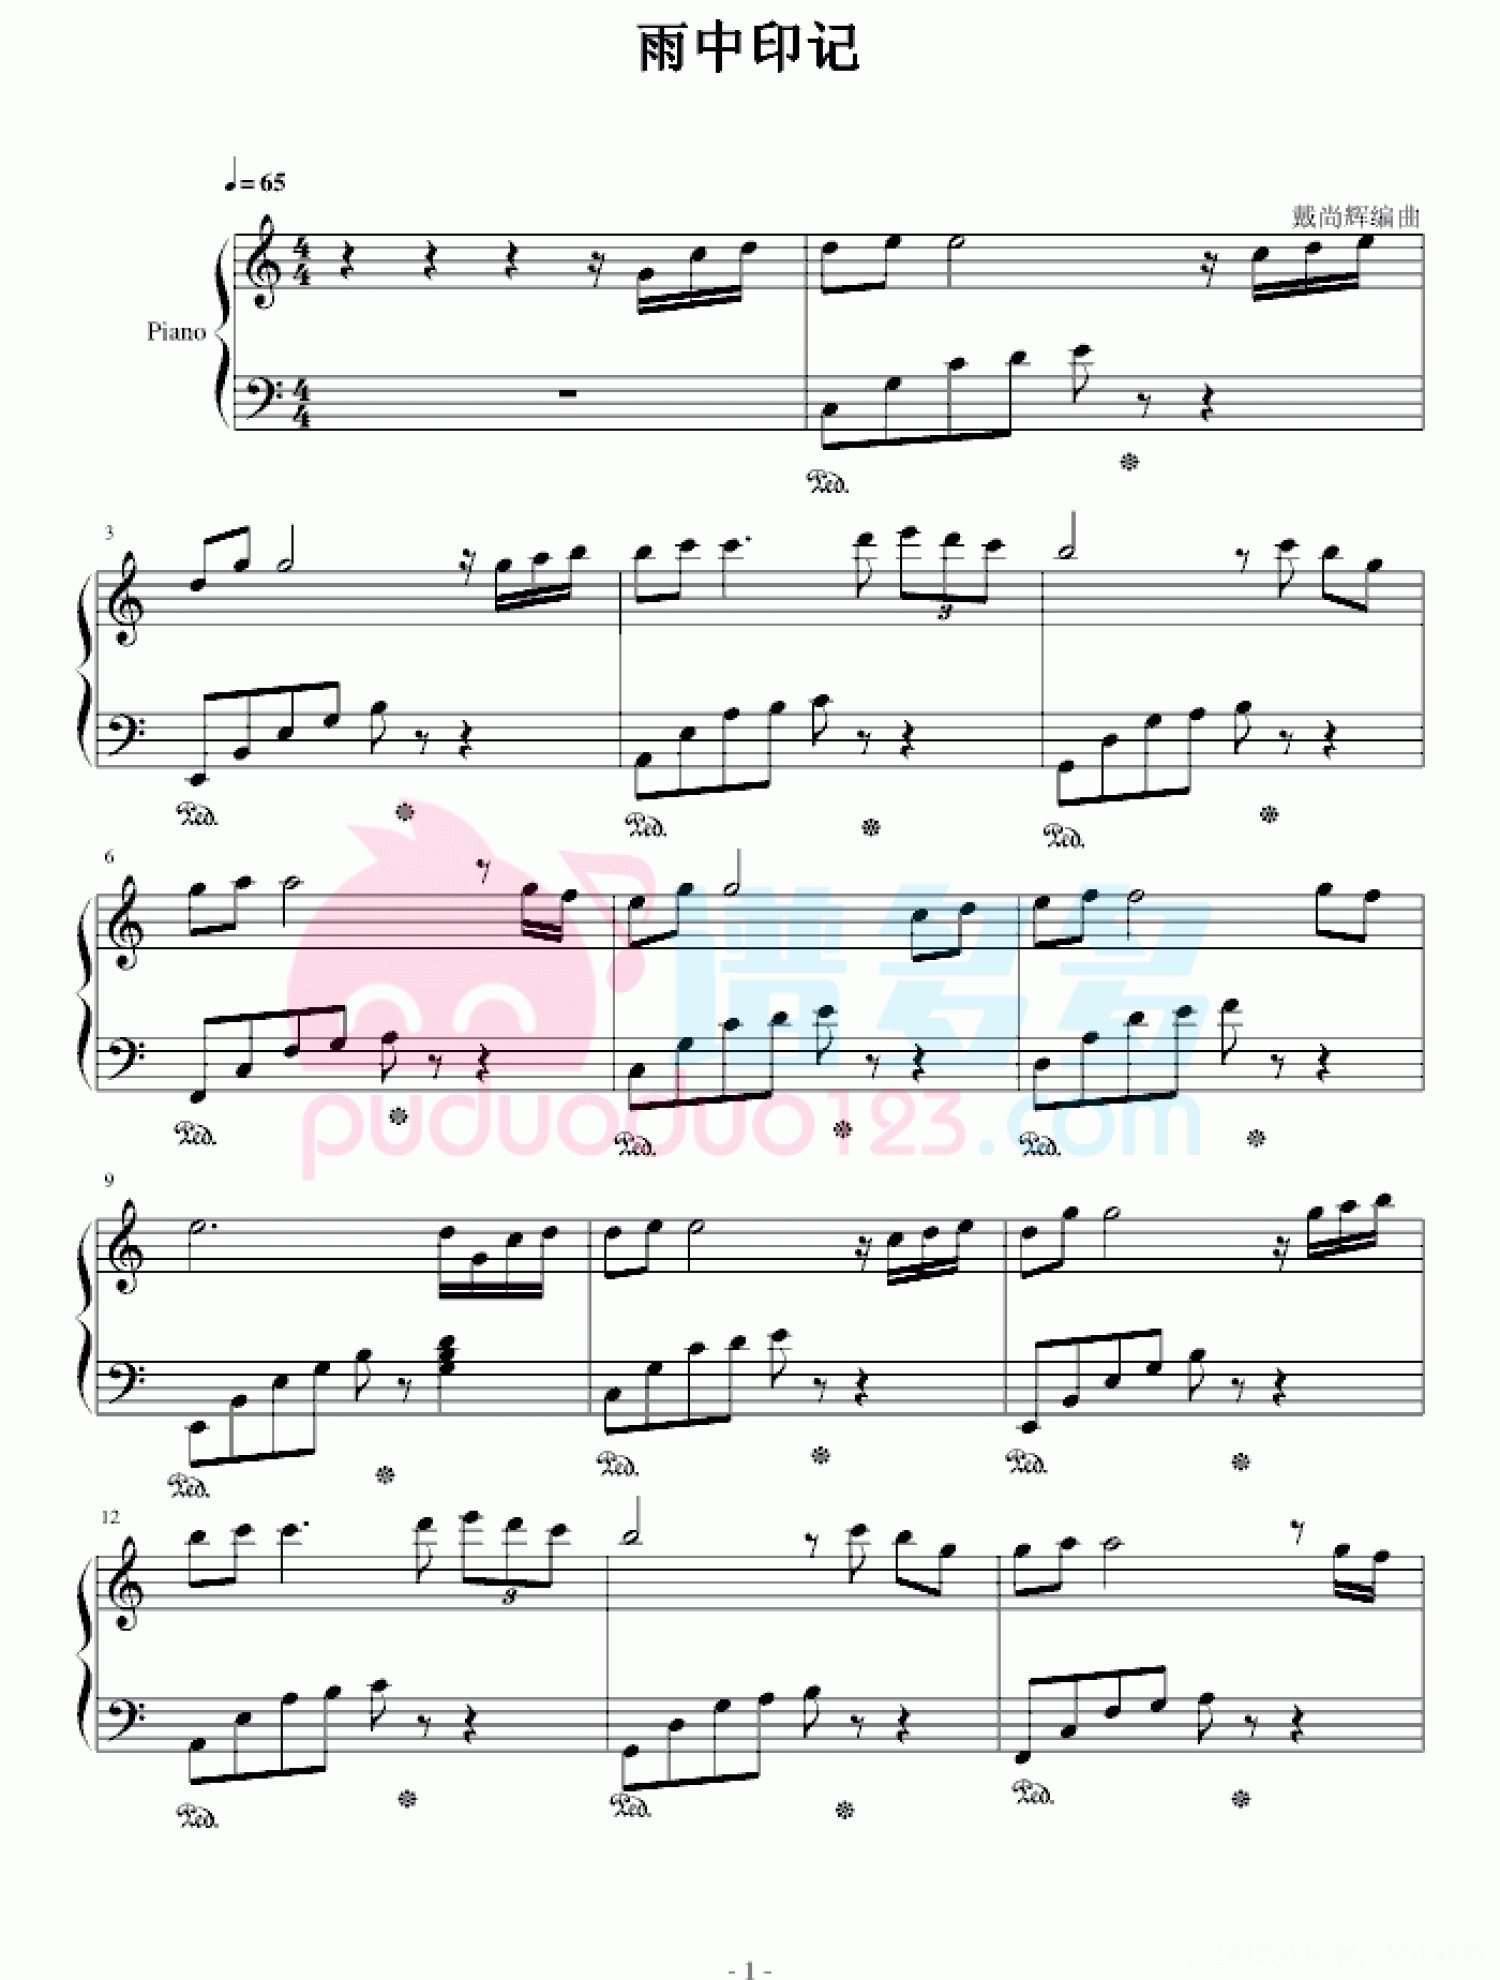 《雨中印记》（Kiss The Rain） 超简版钢琴谱第1张